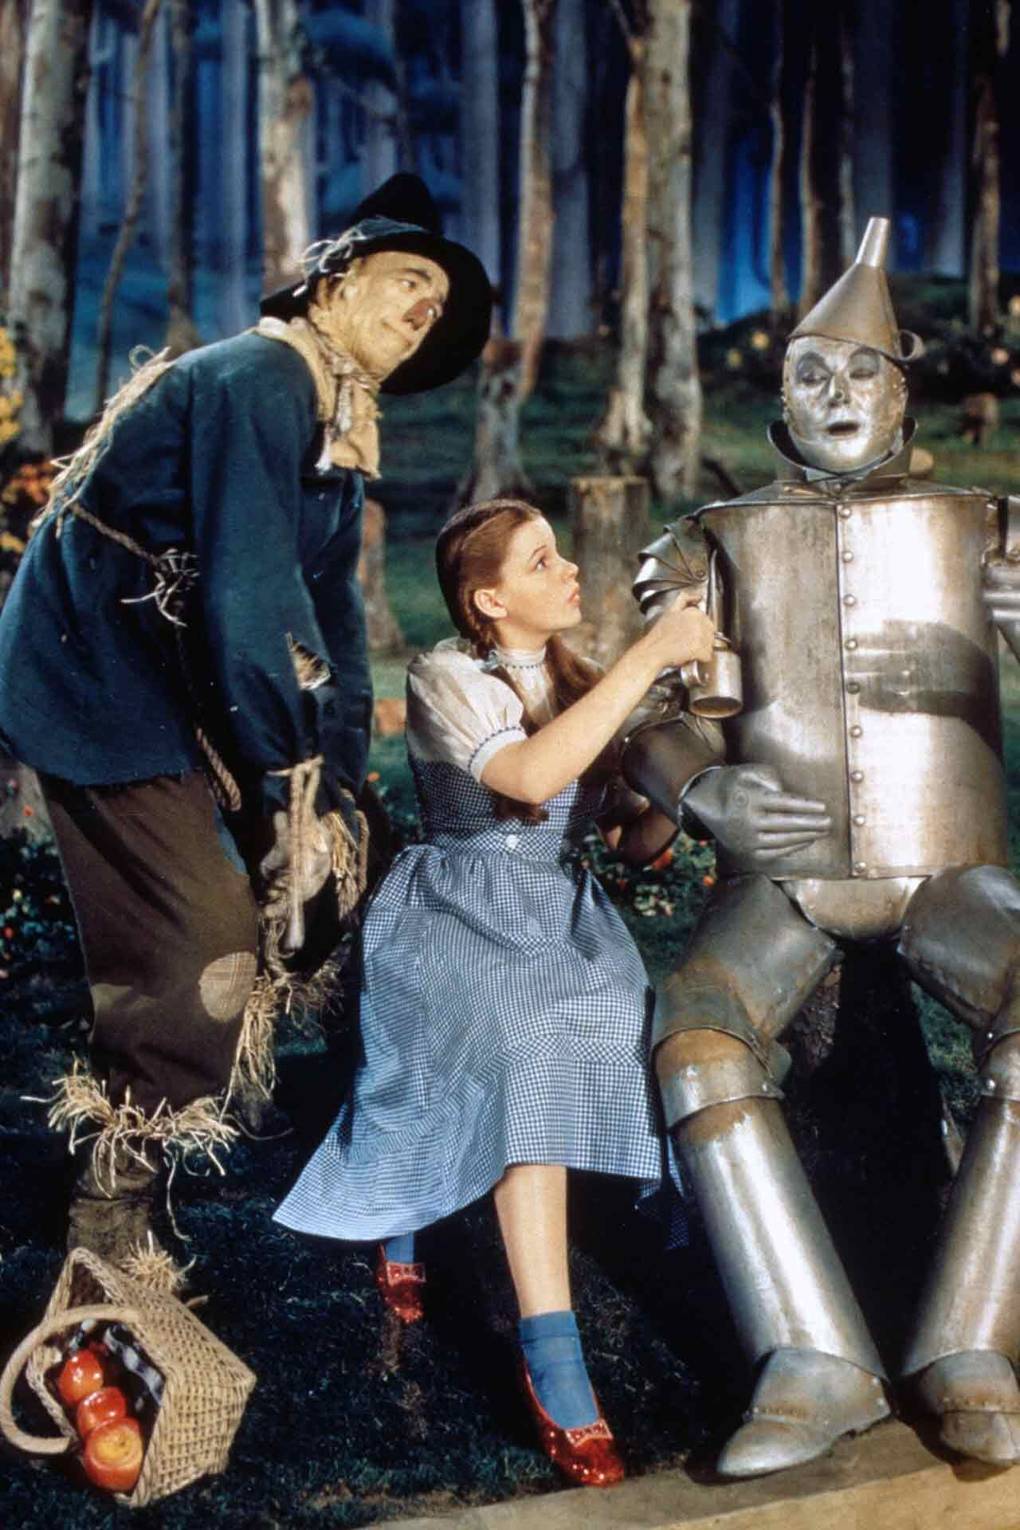 جودي جارلاند في دور دوروثي في فيلم ساحر أوز ، 1939Judy Garland as Dorothy in The Wizard of Oz, 1939.